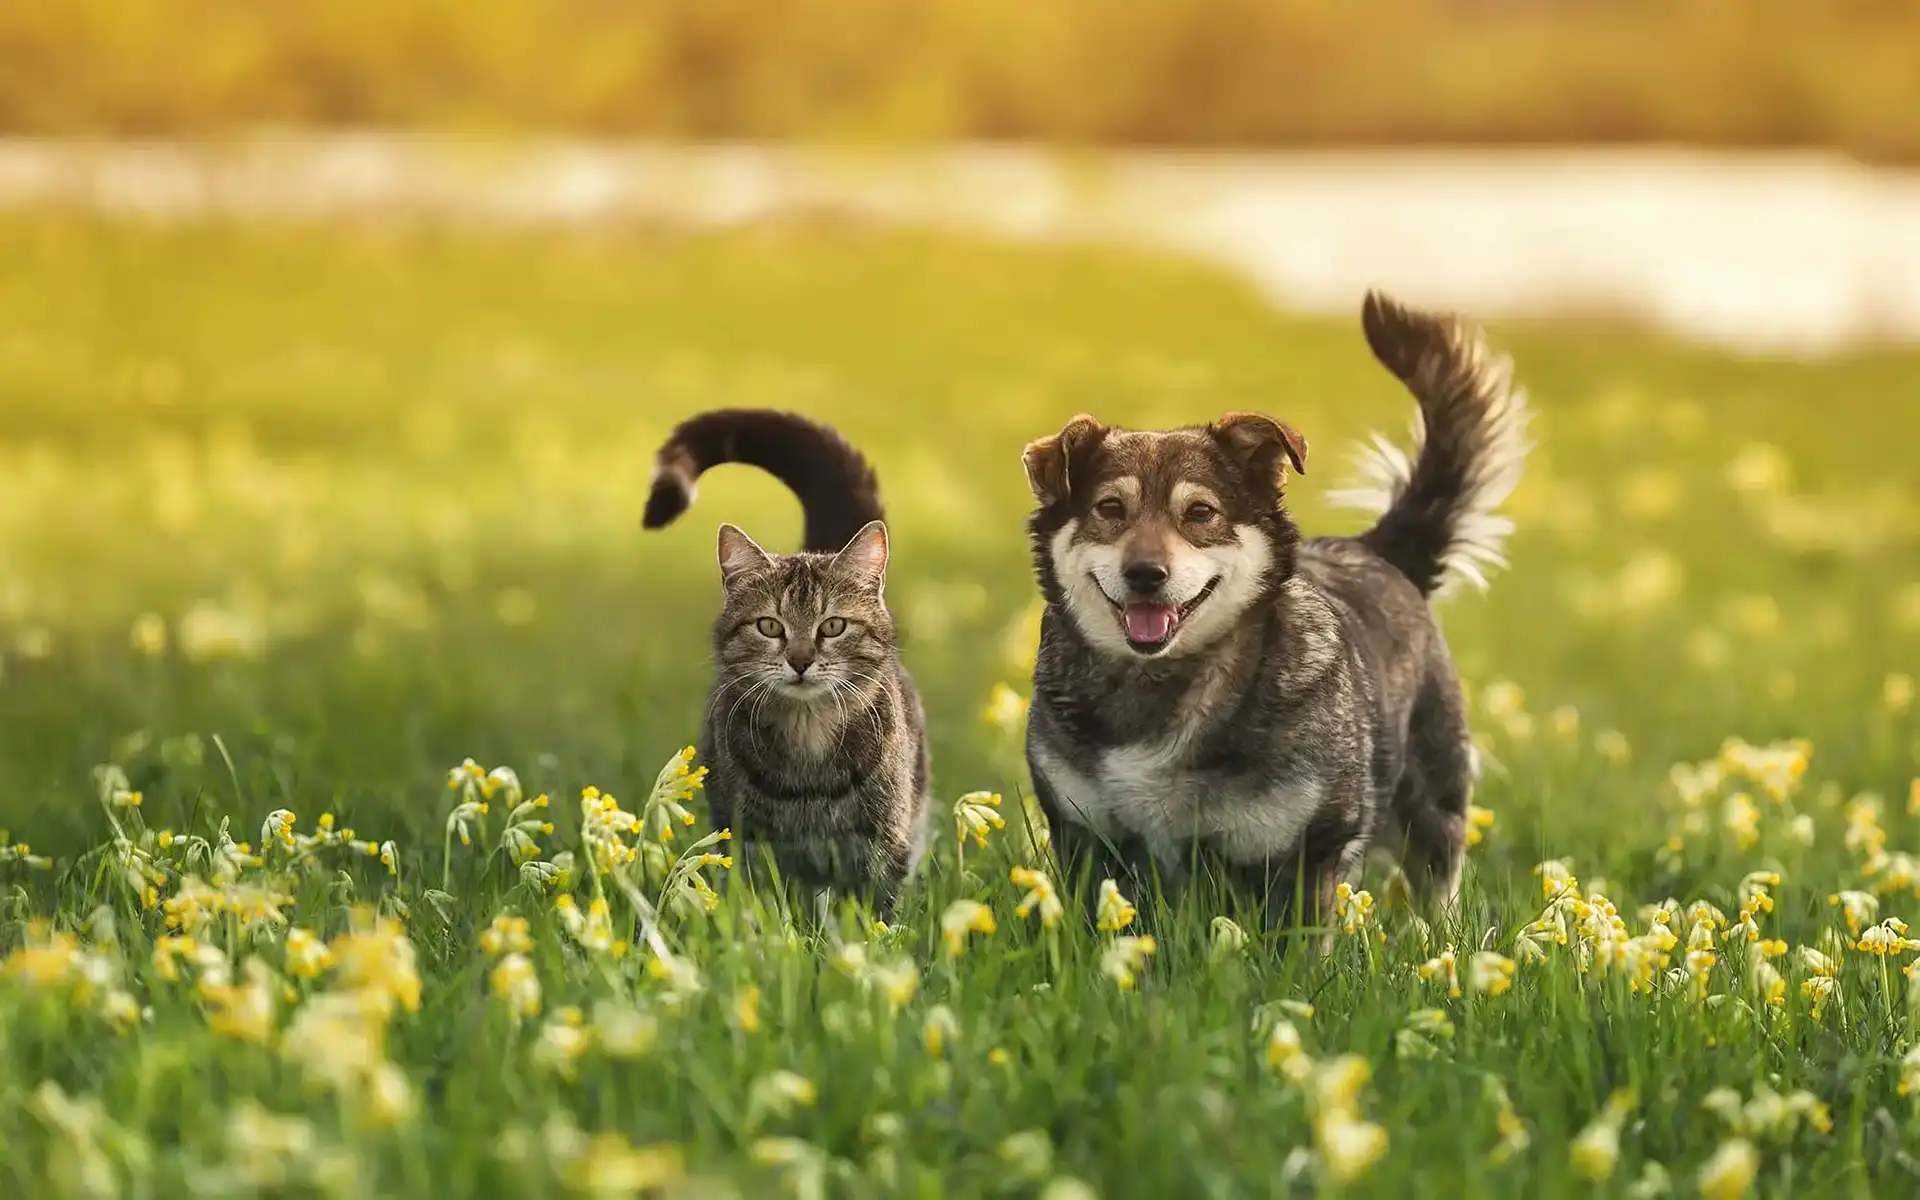 Dog and cat enjoying an open field